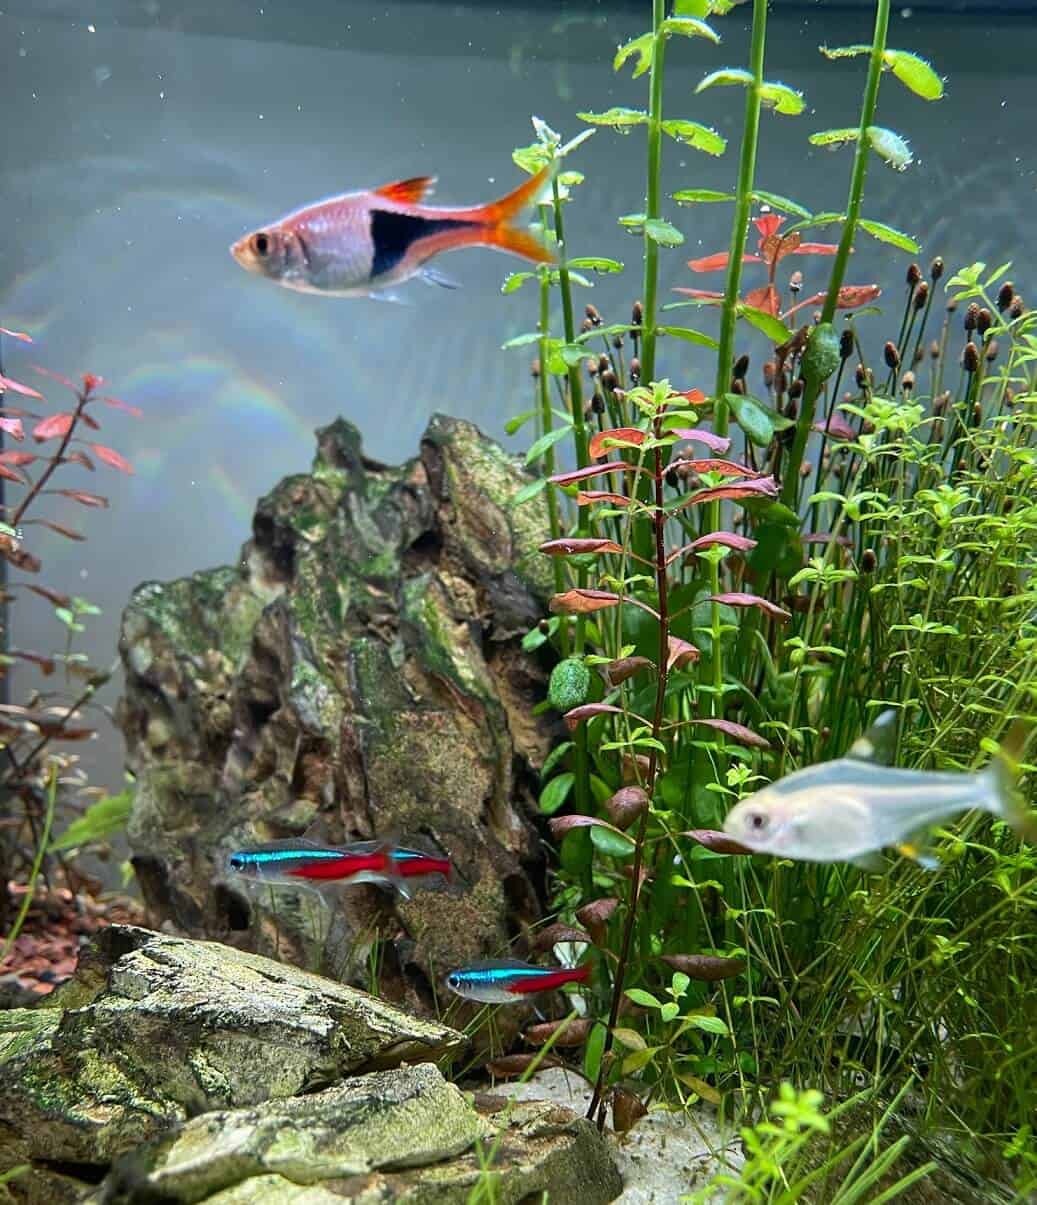 Fish in their basic-aquarium